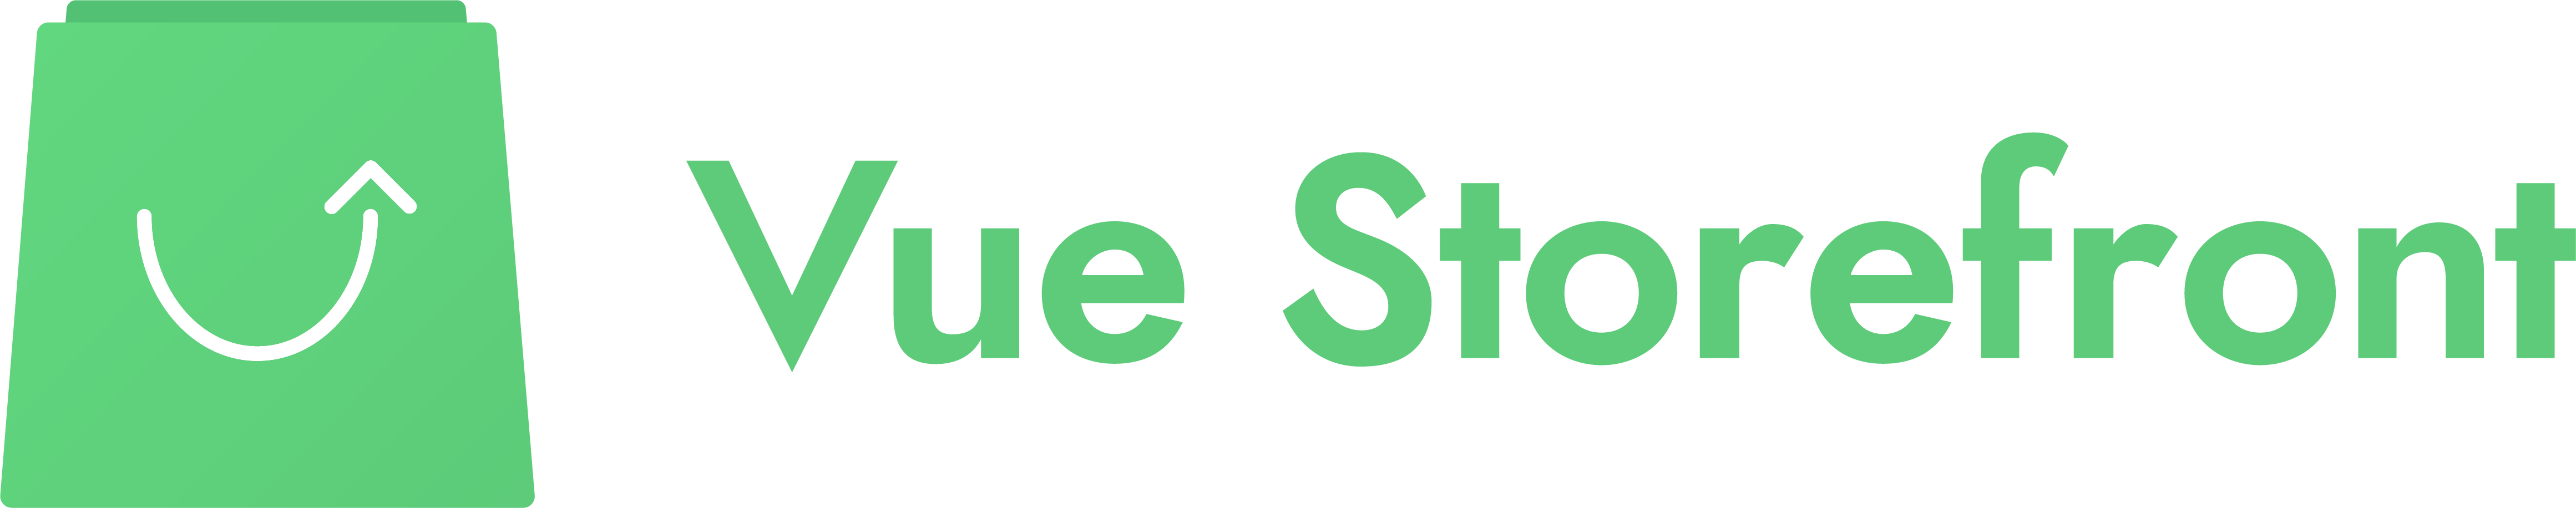 Full Vue Storefront Logo